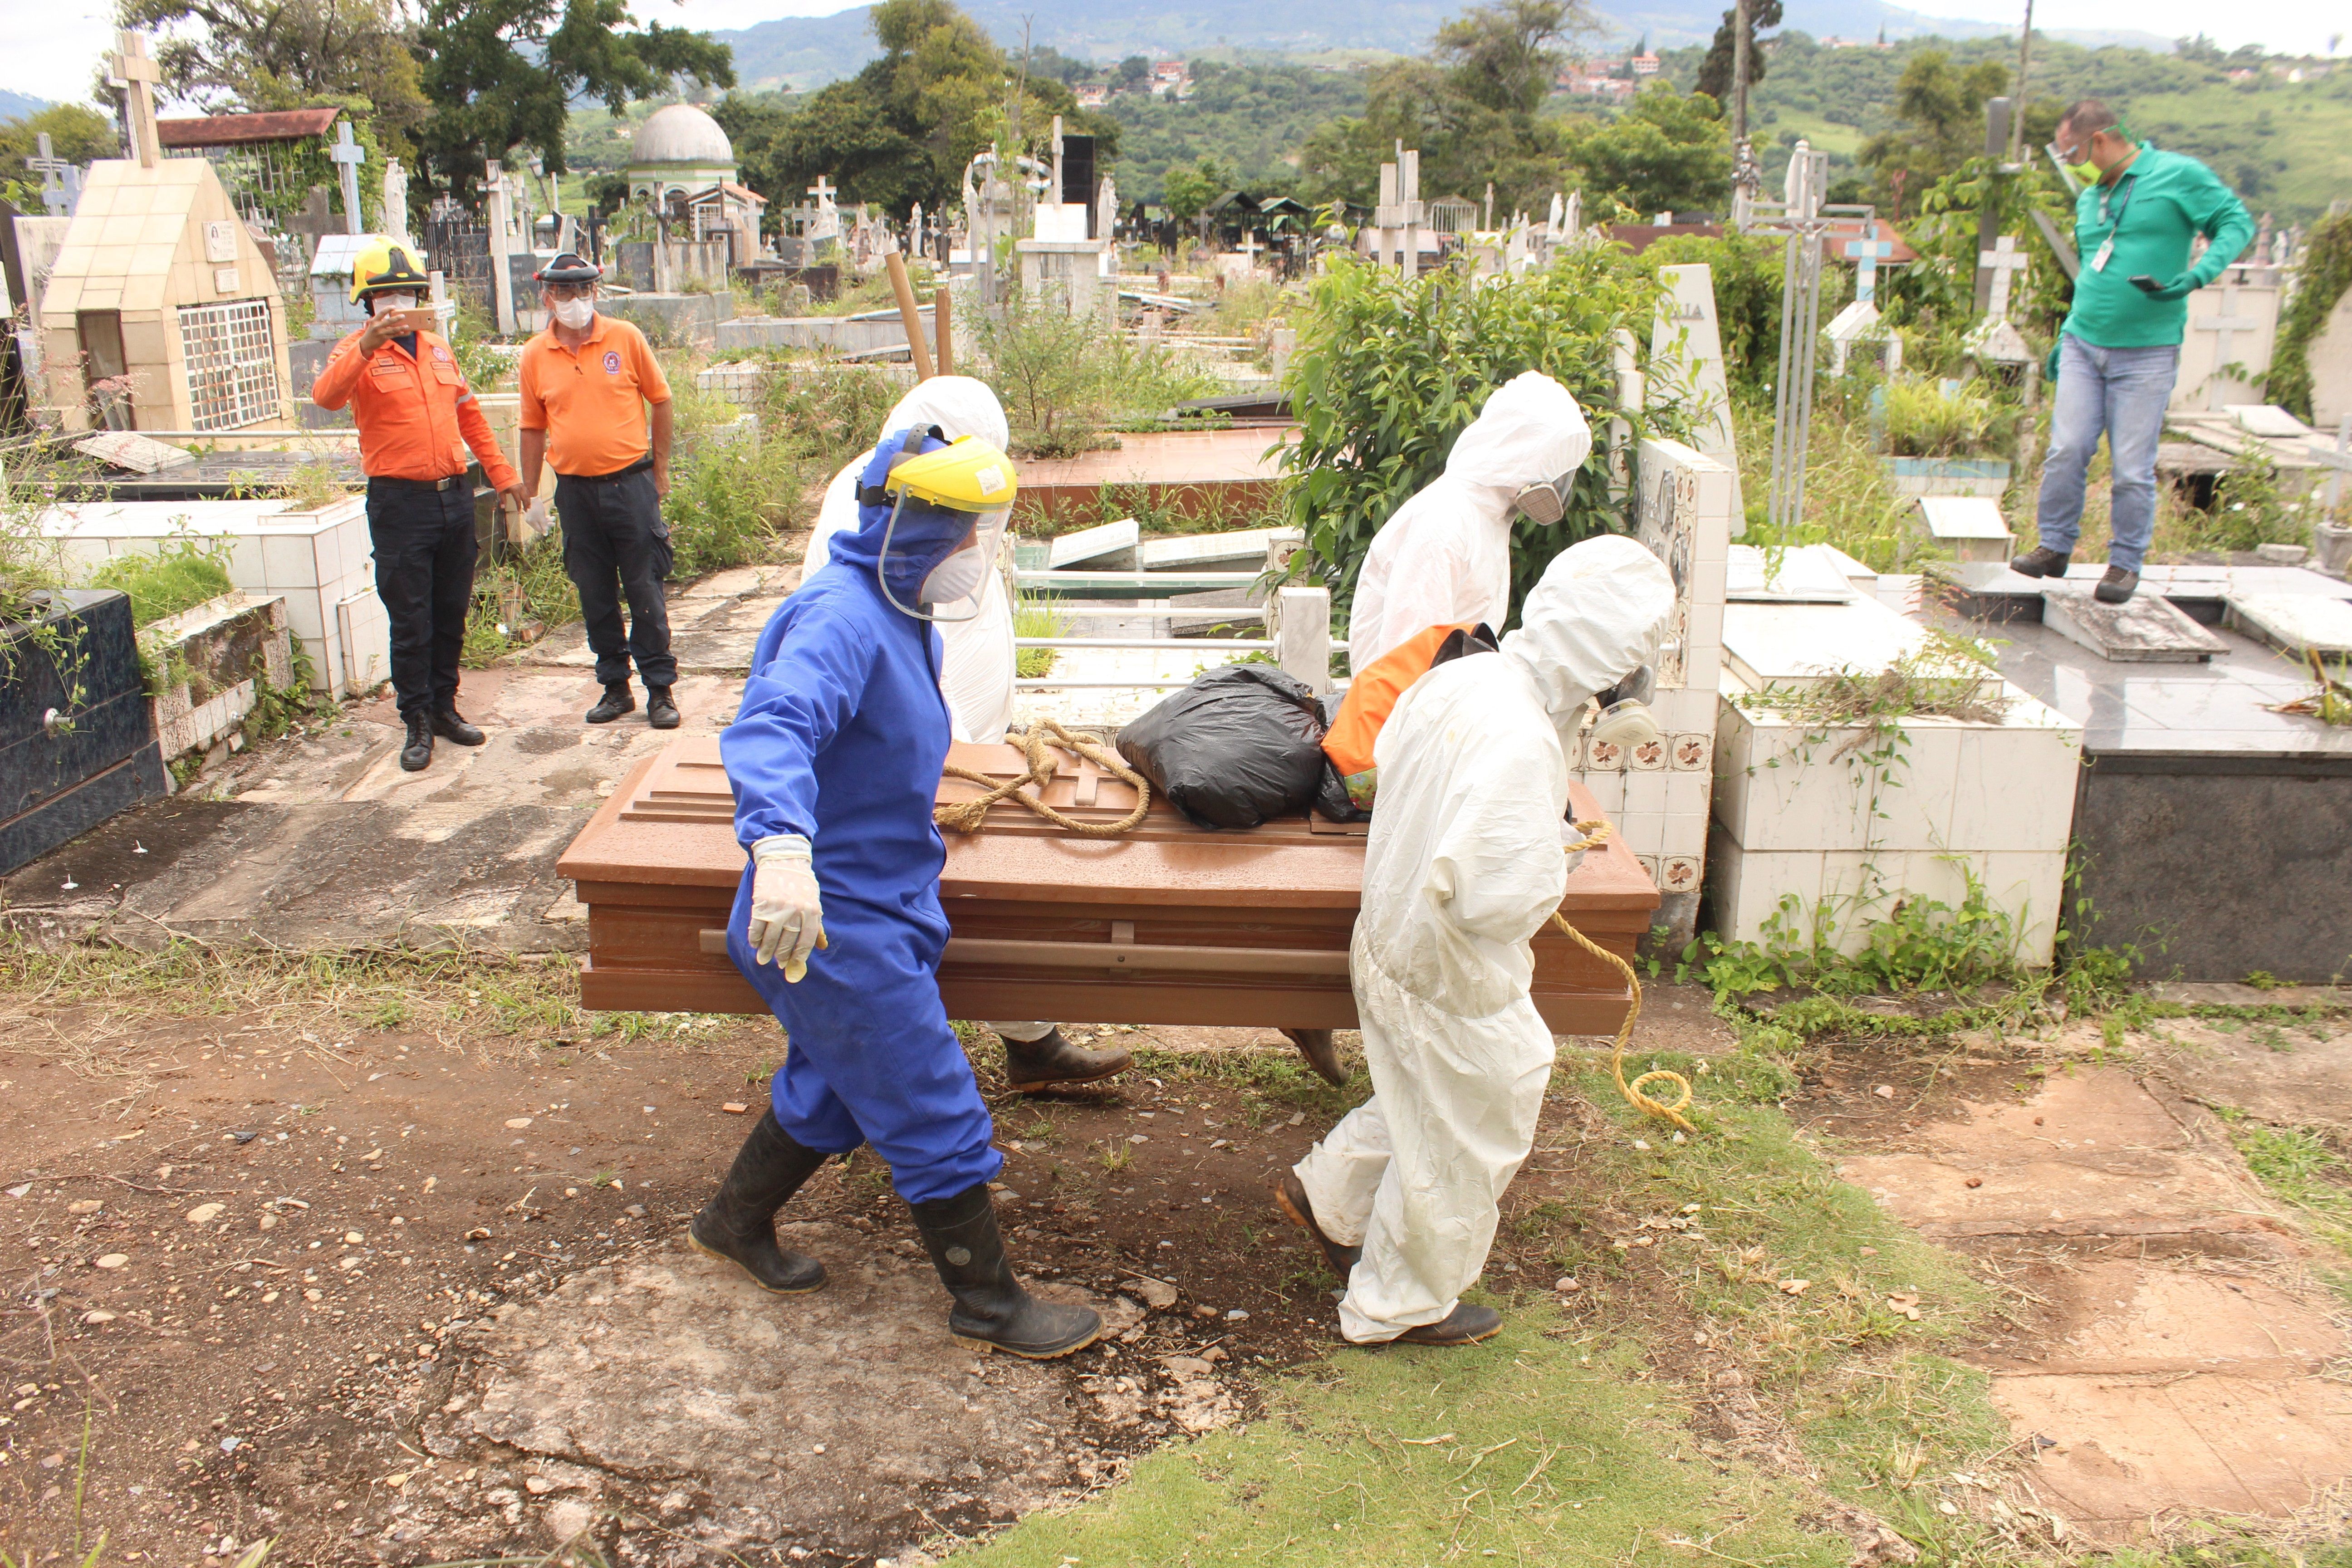 Trabajadores gubernamentales proceden a enterrar un féretro con una víctima de covid-19 en el cementerio de San Cristóbal, estado Táchira. (Foto Prensa Libre: EFE)